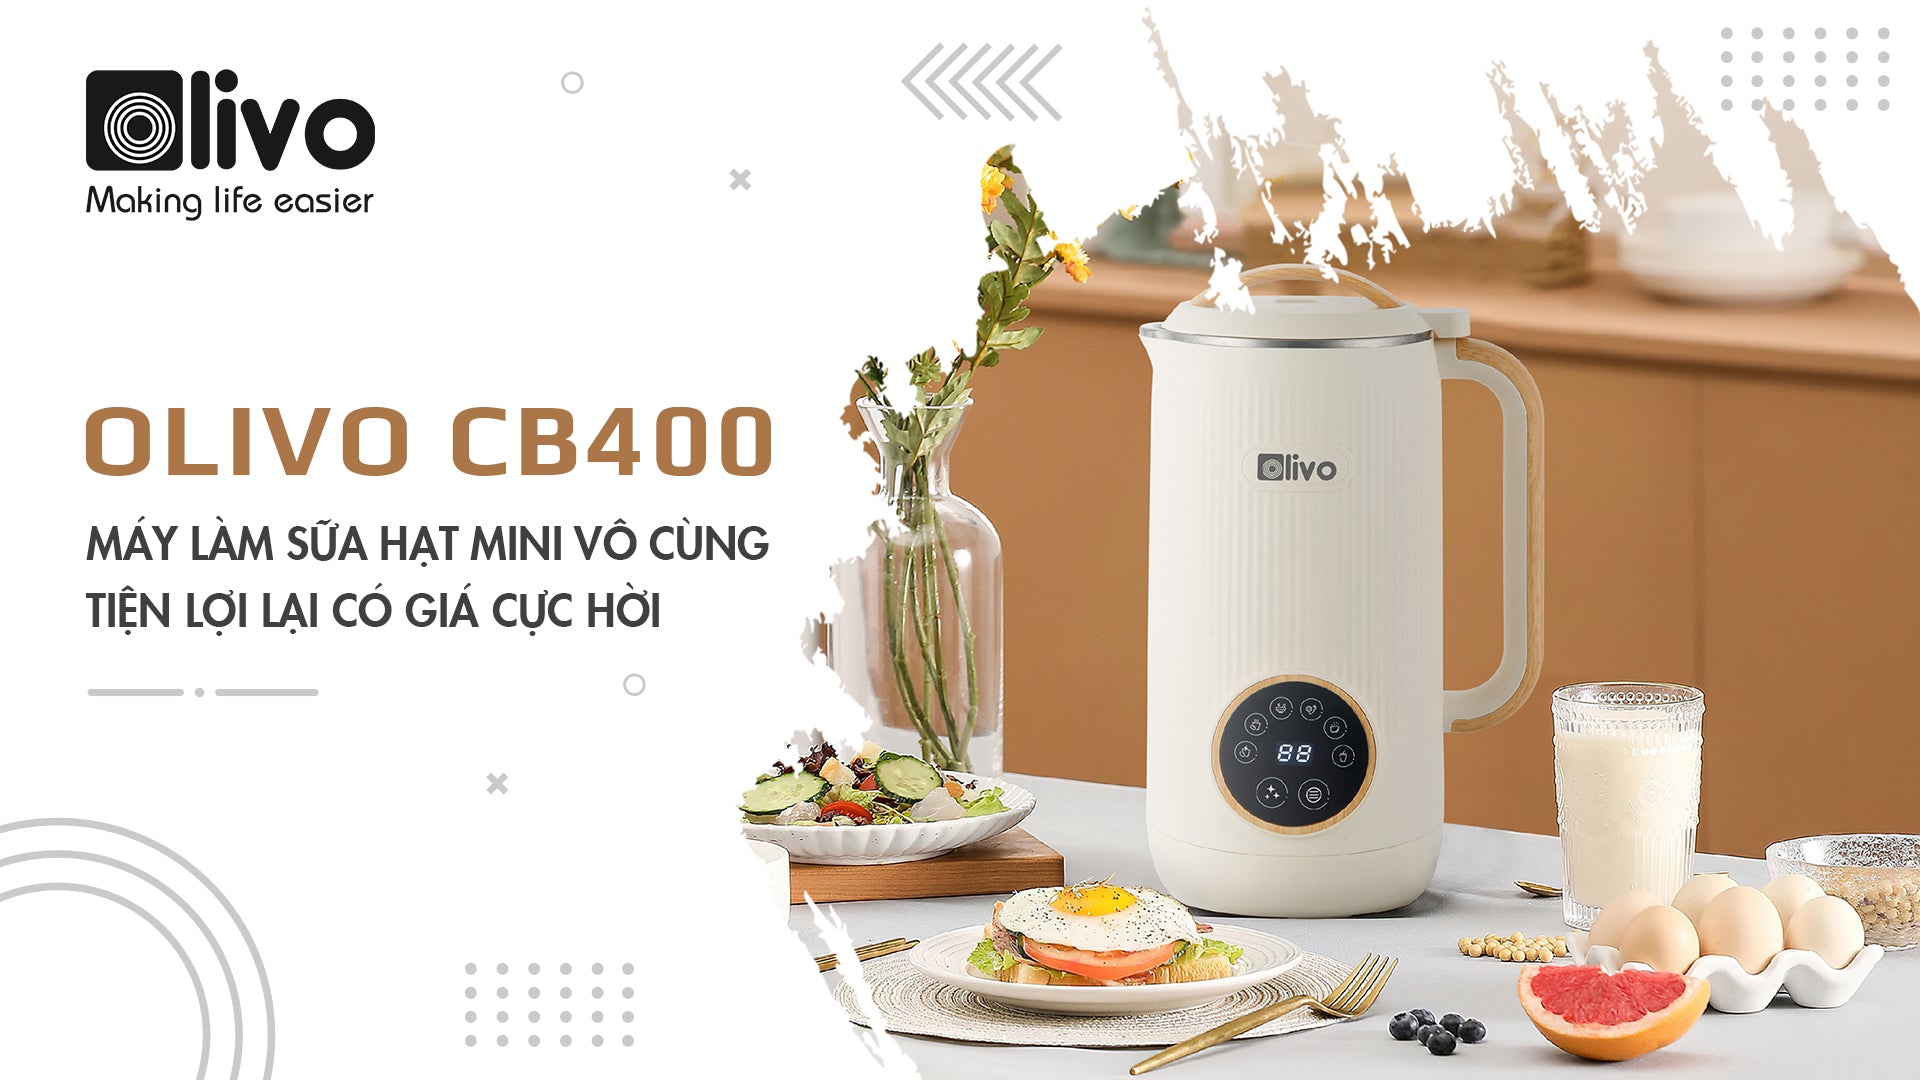 OLIVO CB400 - Máy làm sữa hạt mini vô cùng tiện lợi lại có giá cực hời